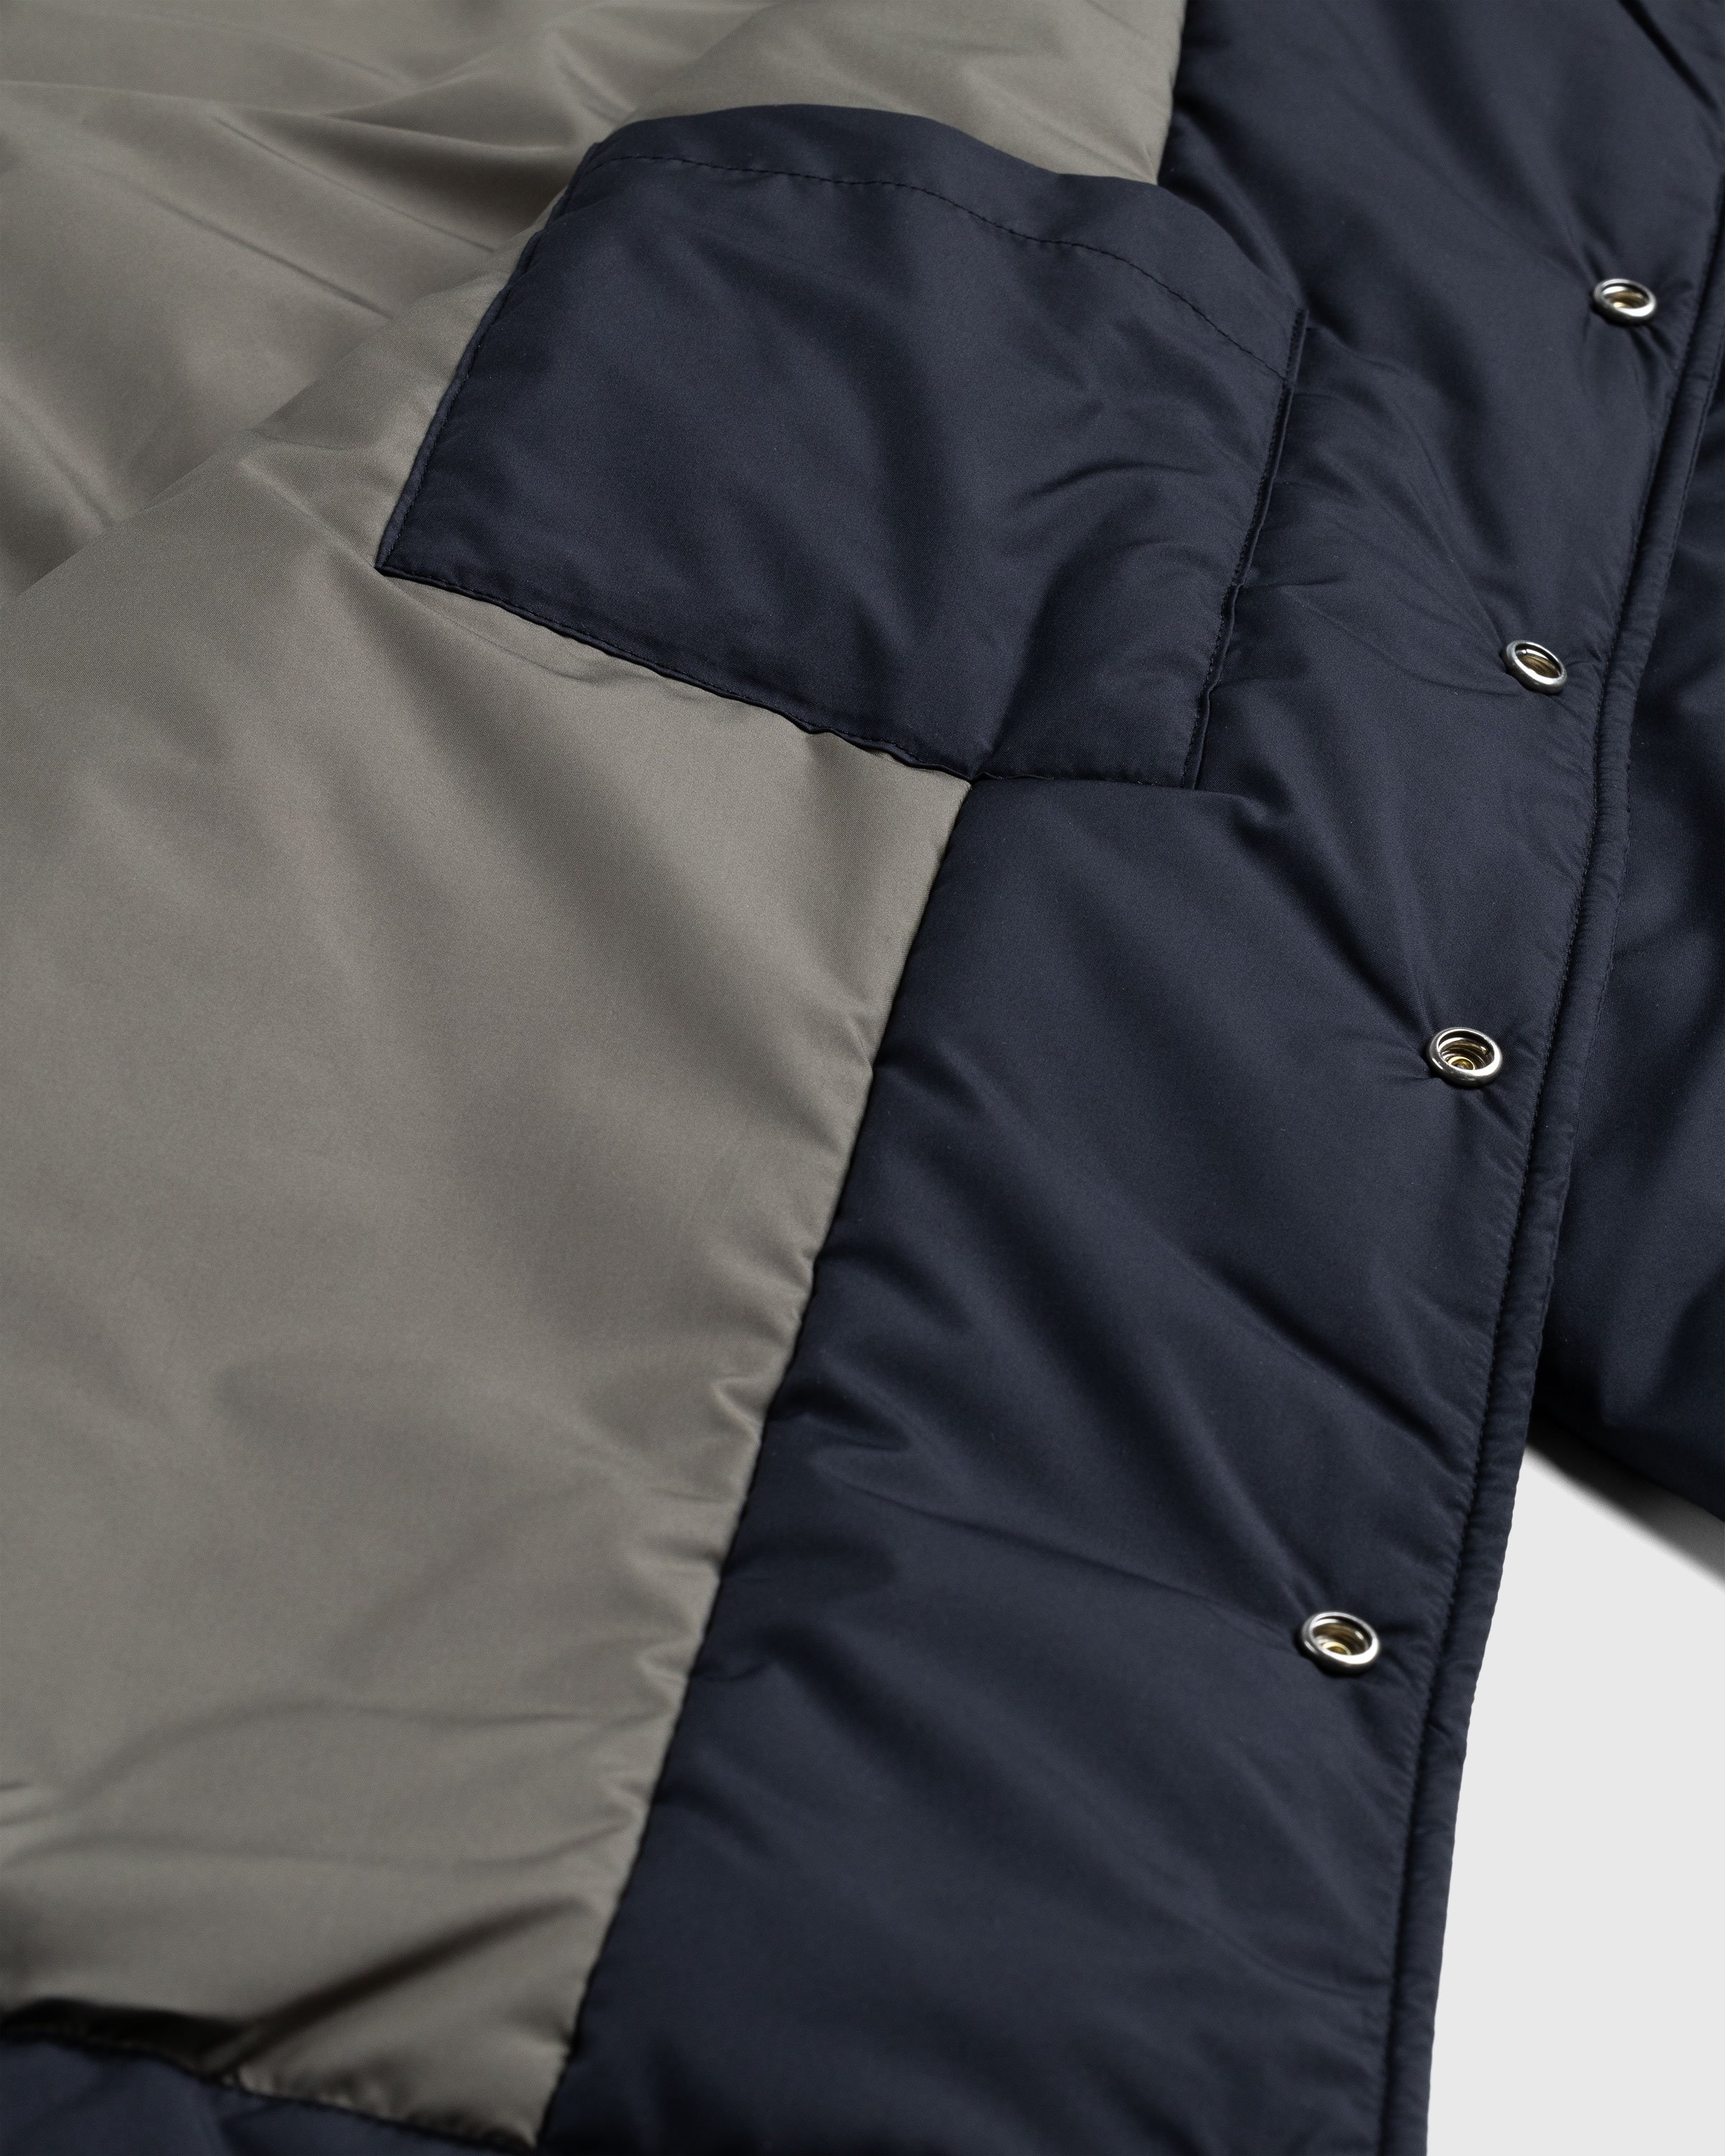 Highsnobiety HS05 - Light Insulated Eco-Poly Jacket Black - Clothing - Black - Image 4